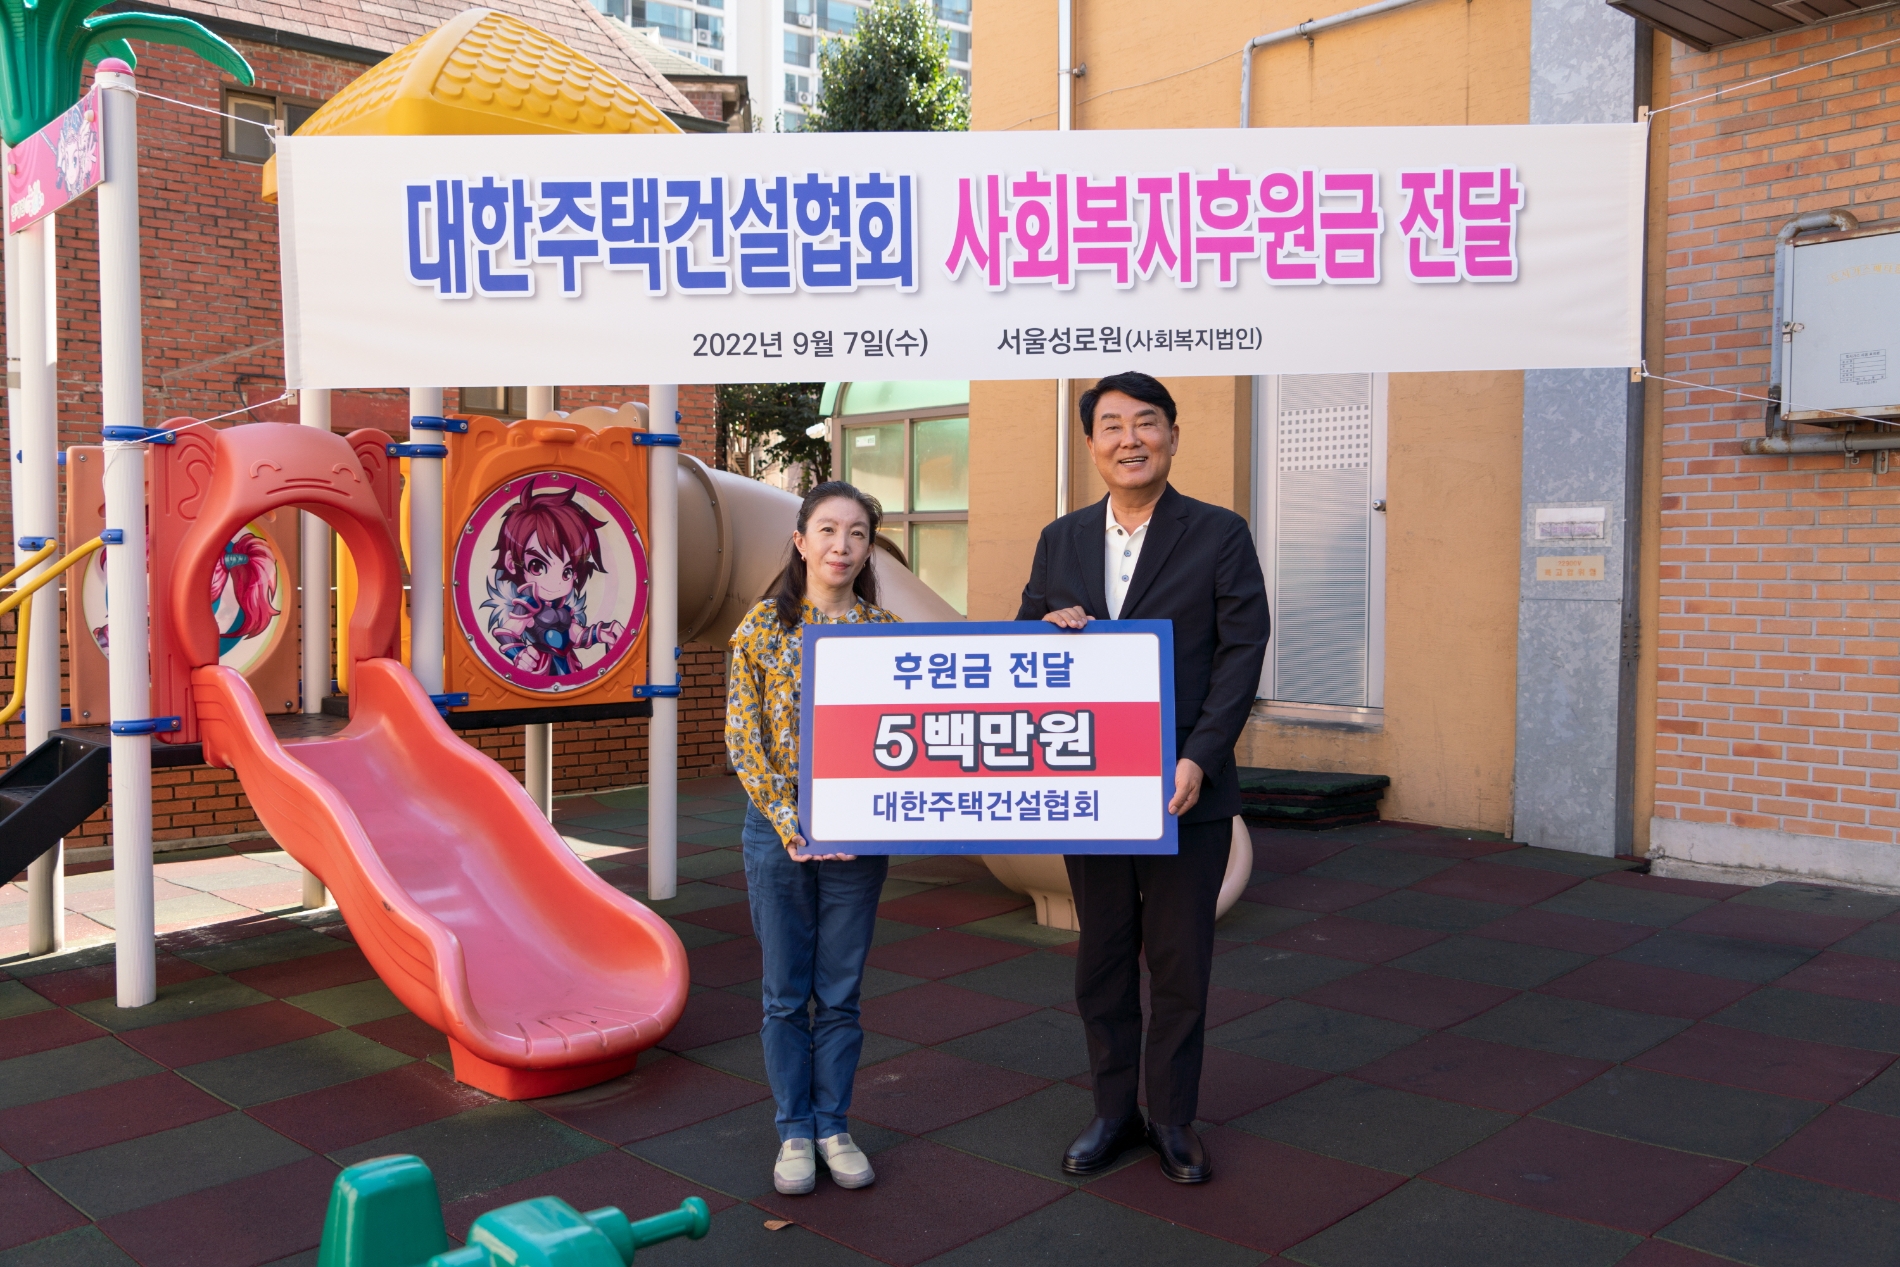 박재홍 회장(사진 오른쪽)이 김아리서울성로원 원장에게 후원금을 전달하고 있다. / 사진제공=대한주택건설협회